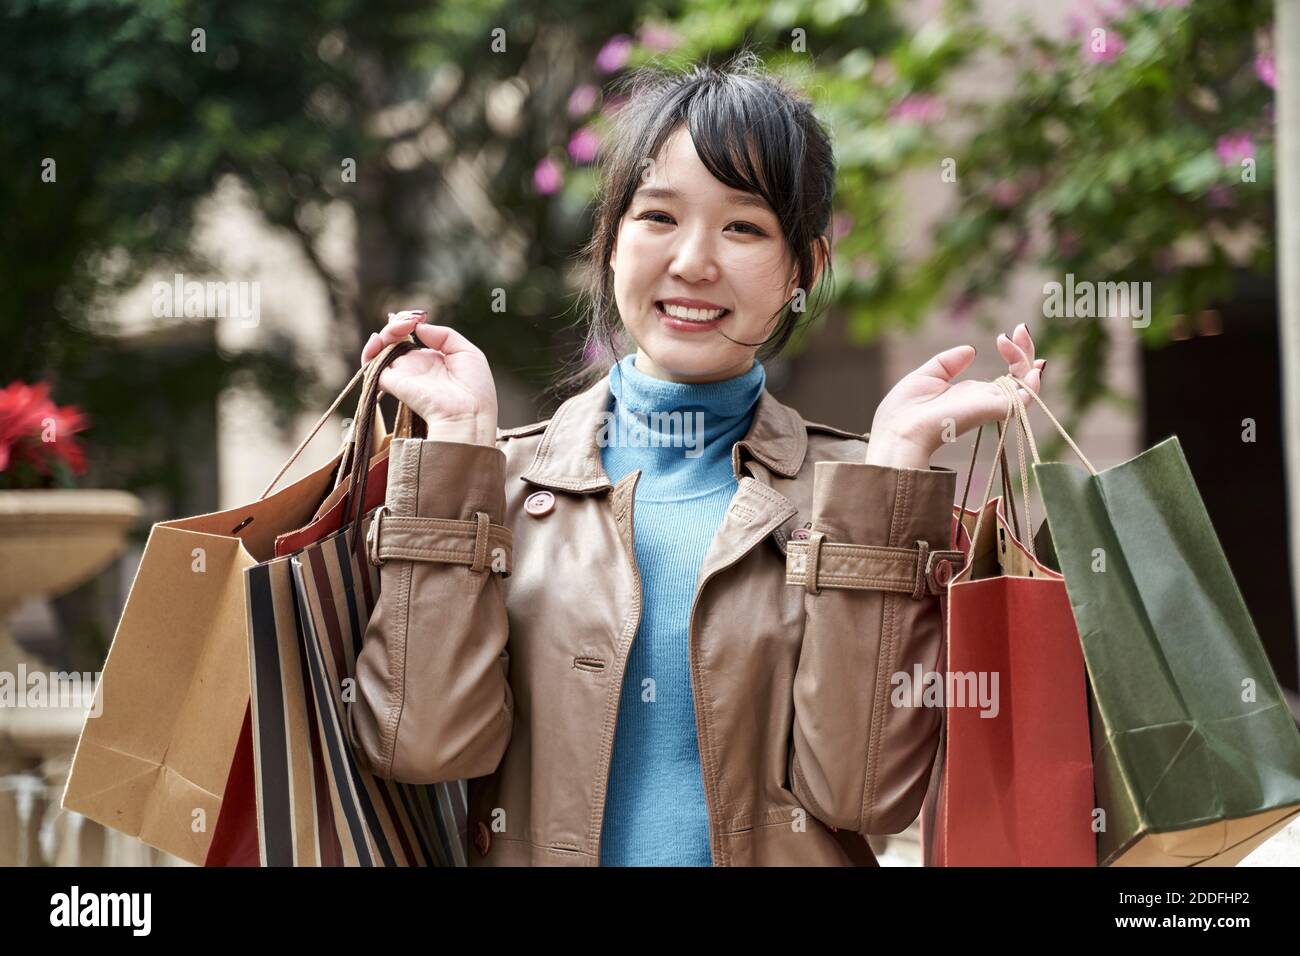 hermoso feliz joven asiático llevando bolsas de compras mirando la cámara sonriendo Foto de stock